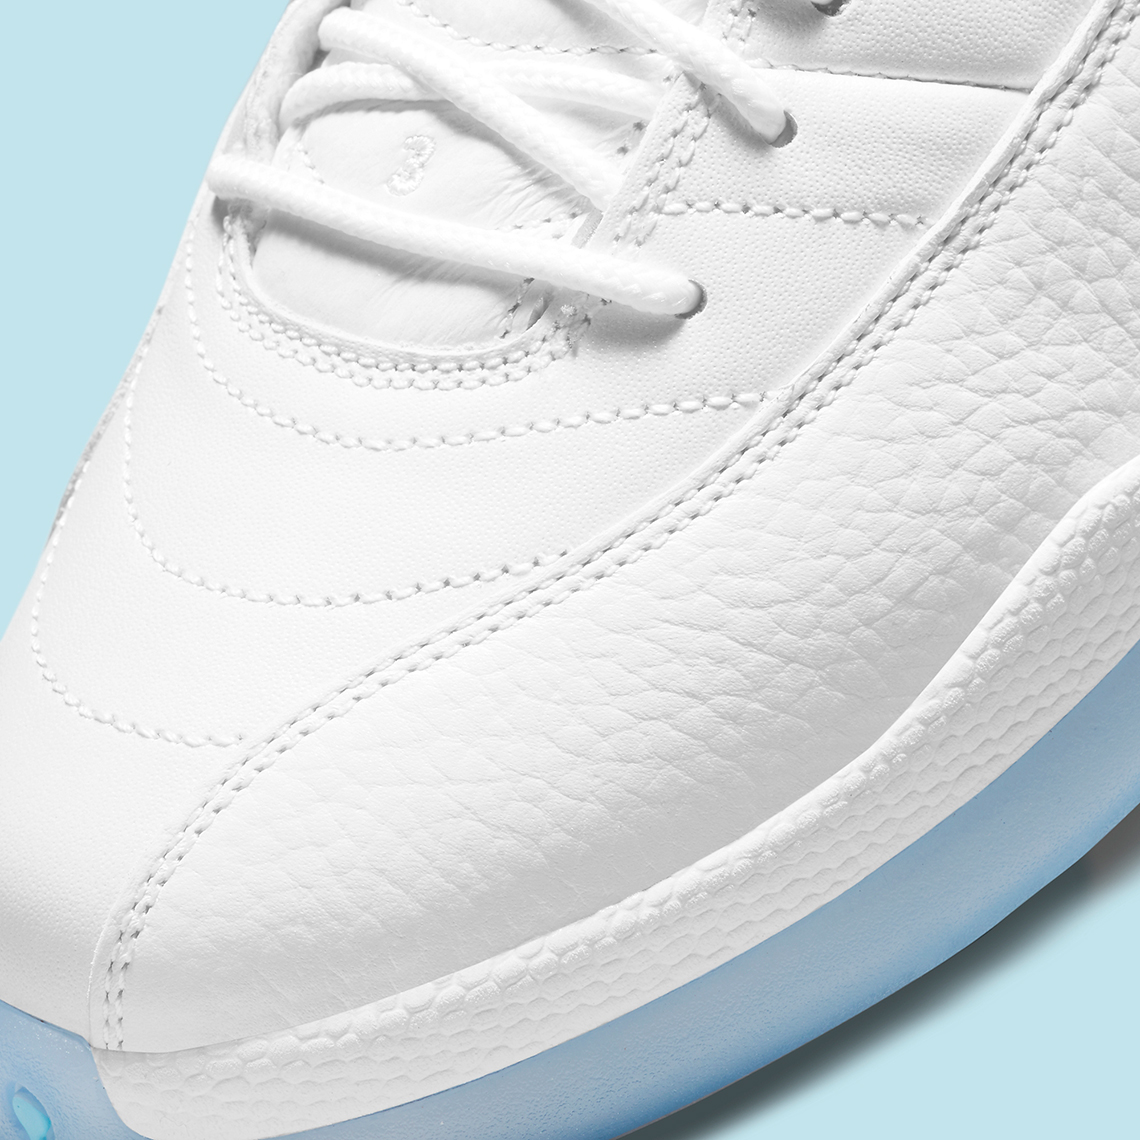 Nike Air Jordan 12 Low Easter Size 8 DB0733–190 White Playoff